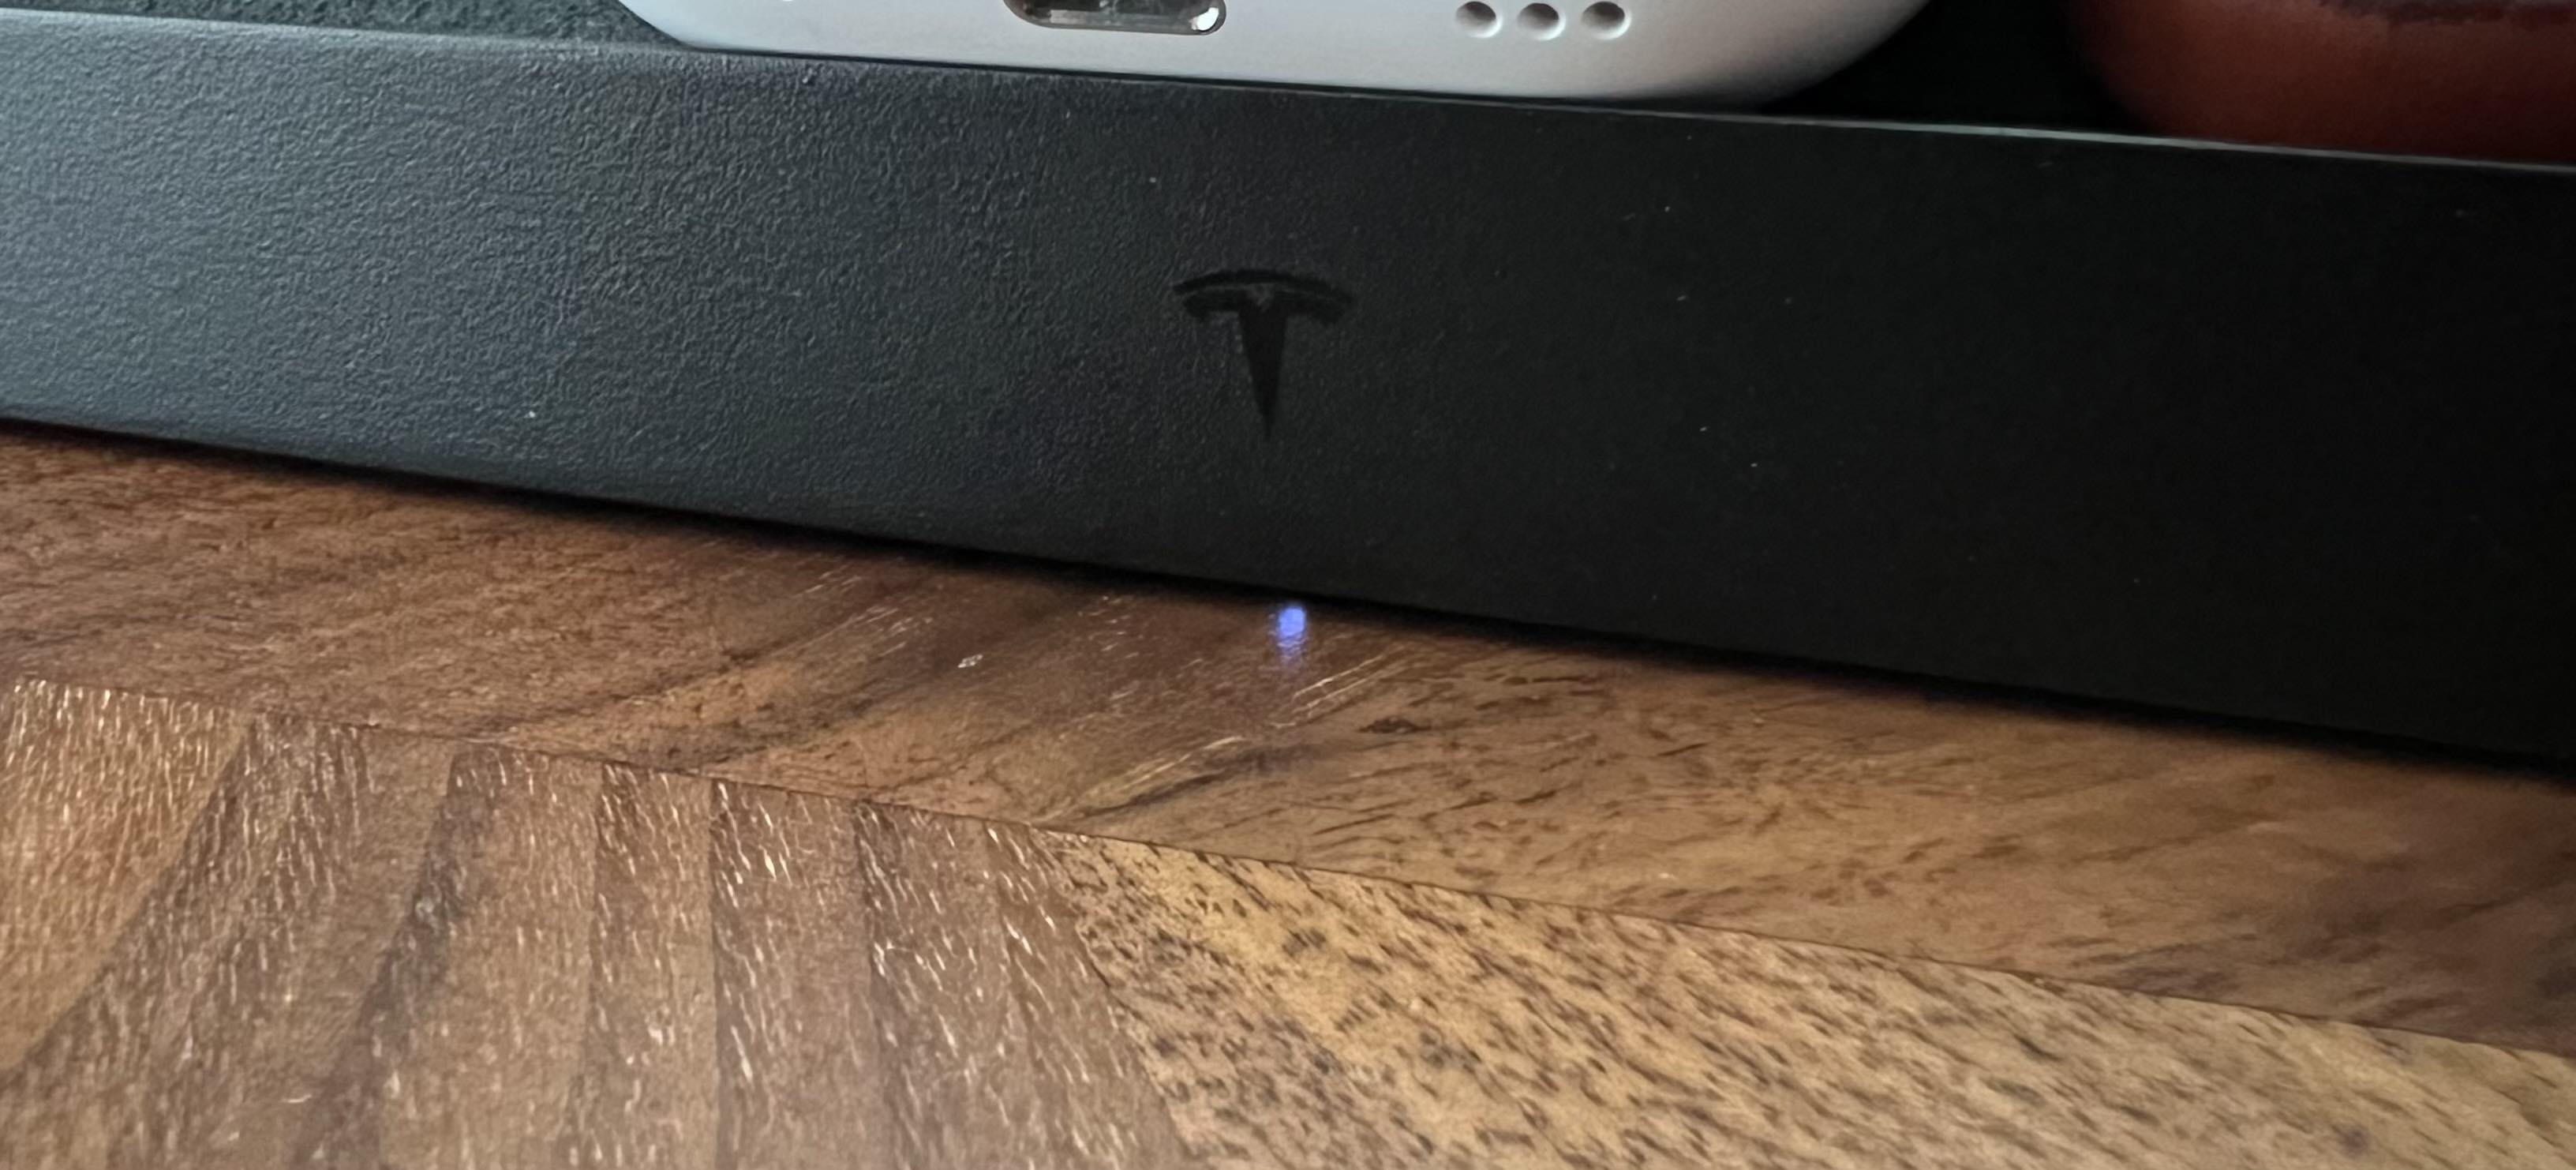 Indikator LED untuk alas pengisian daya nirkabel Tesla